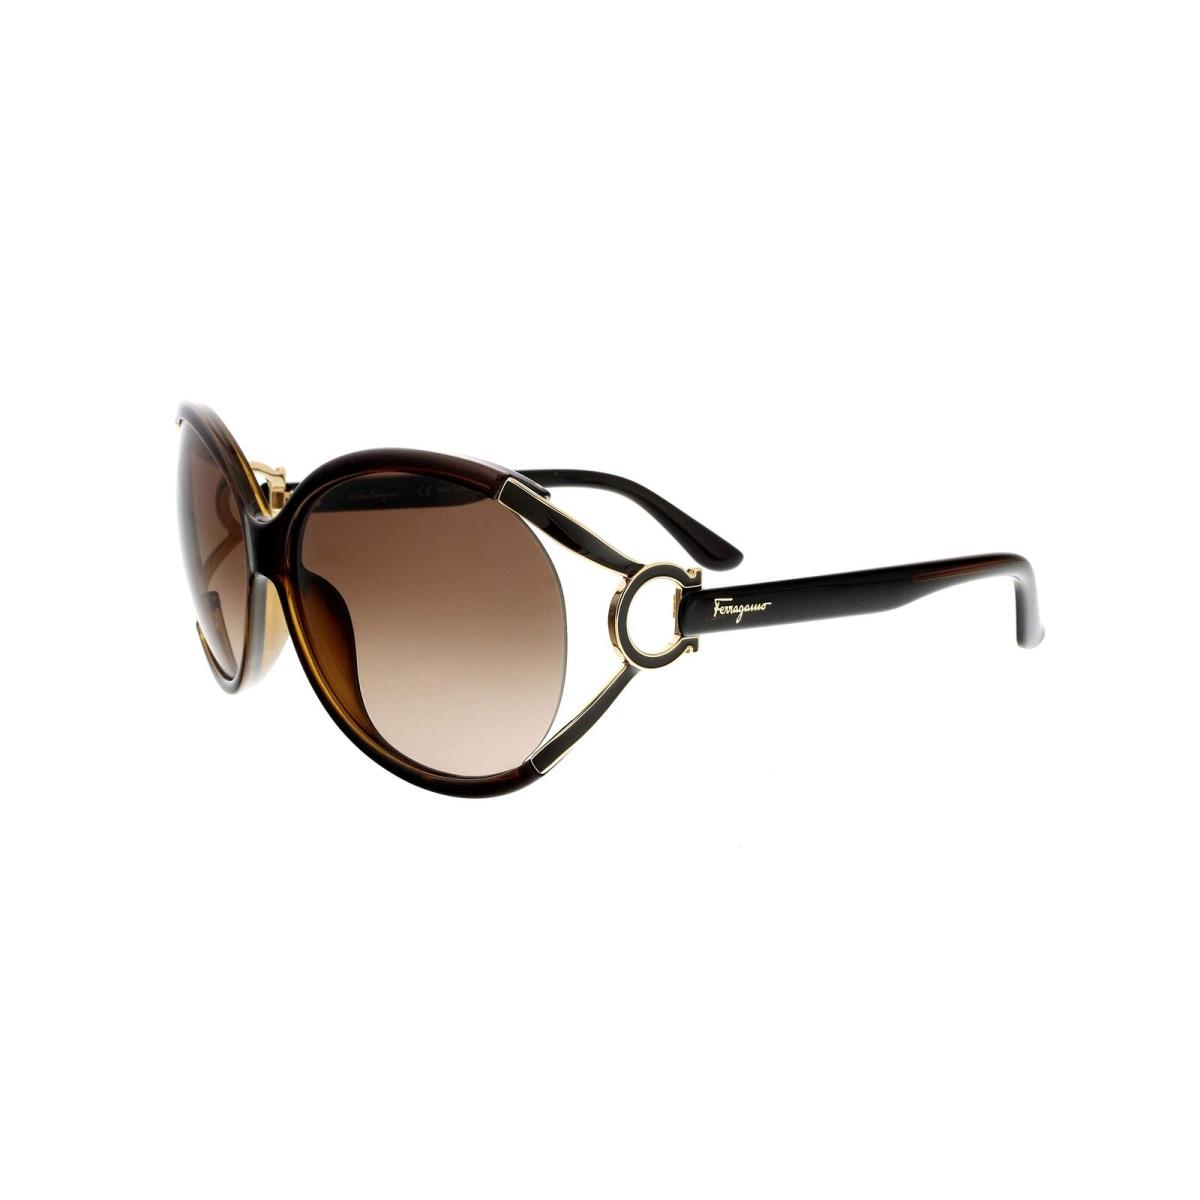 Salvatore Ferragamo Sunglasses SF600S 220 Pearl Dark Brown 61 14 130